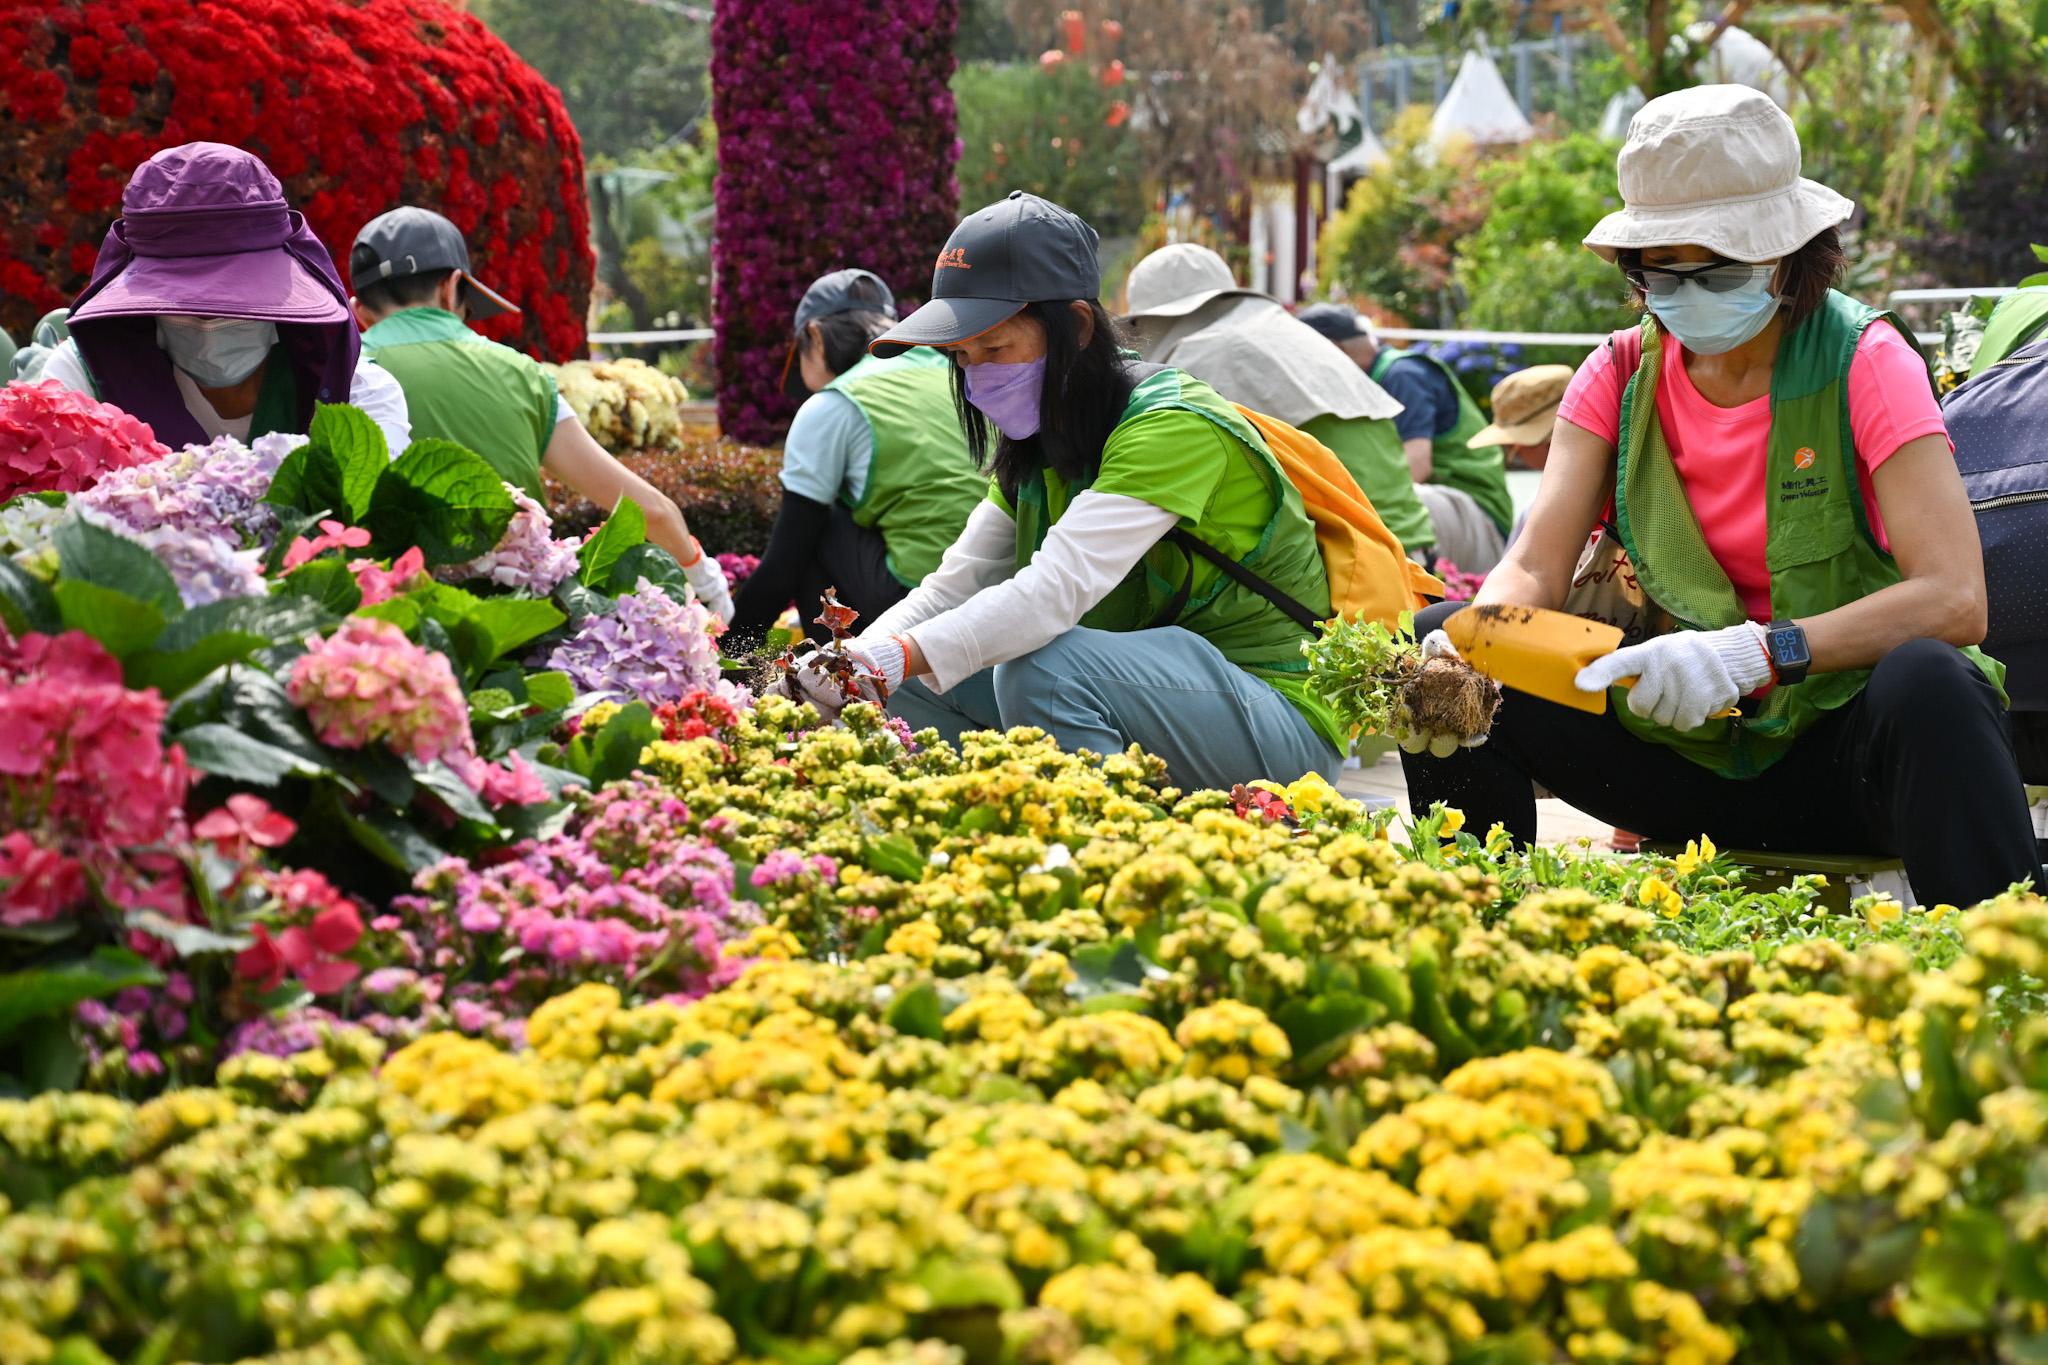 今年的香港花卉展覽（花展）已經圓滿結束。康樂及文化事務署再接再厲，於花展閉幕後兩天，即今日及明日（三月二十五日及二十六日）在維多利亞公園舉辦環保回收日，加強實行環保措施和減少廢物棄置。圖示義工於會場協助分類並回收花卉。
